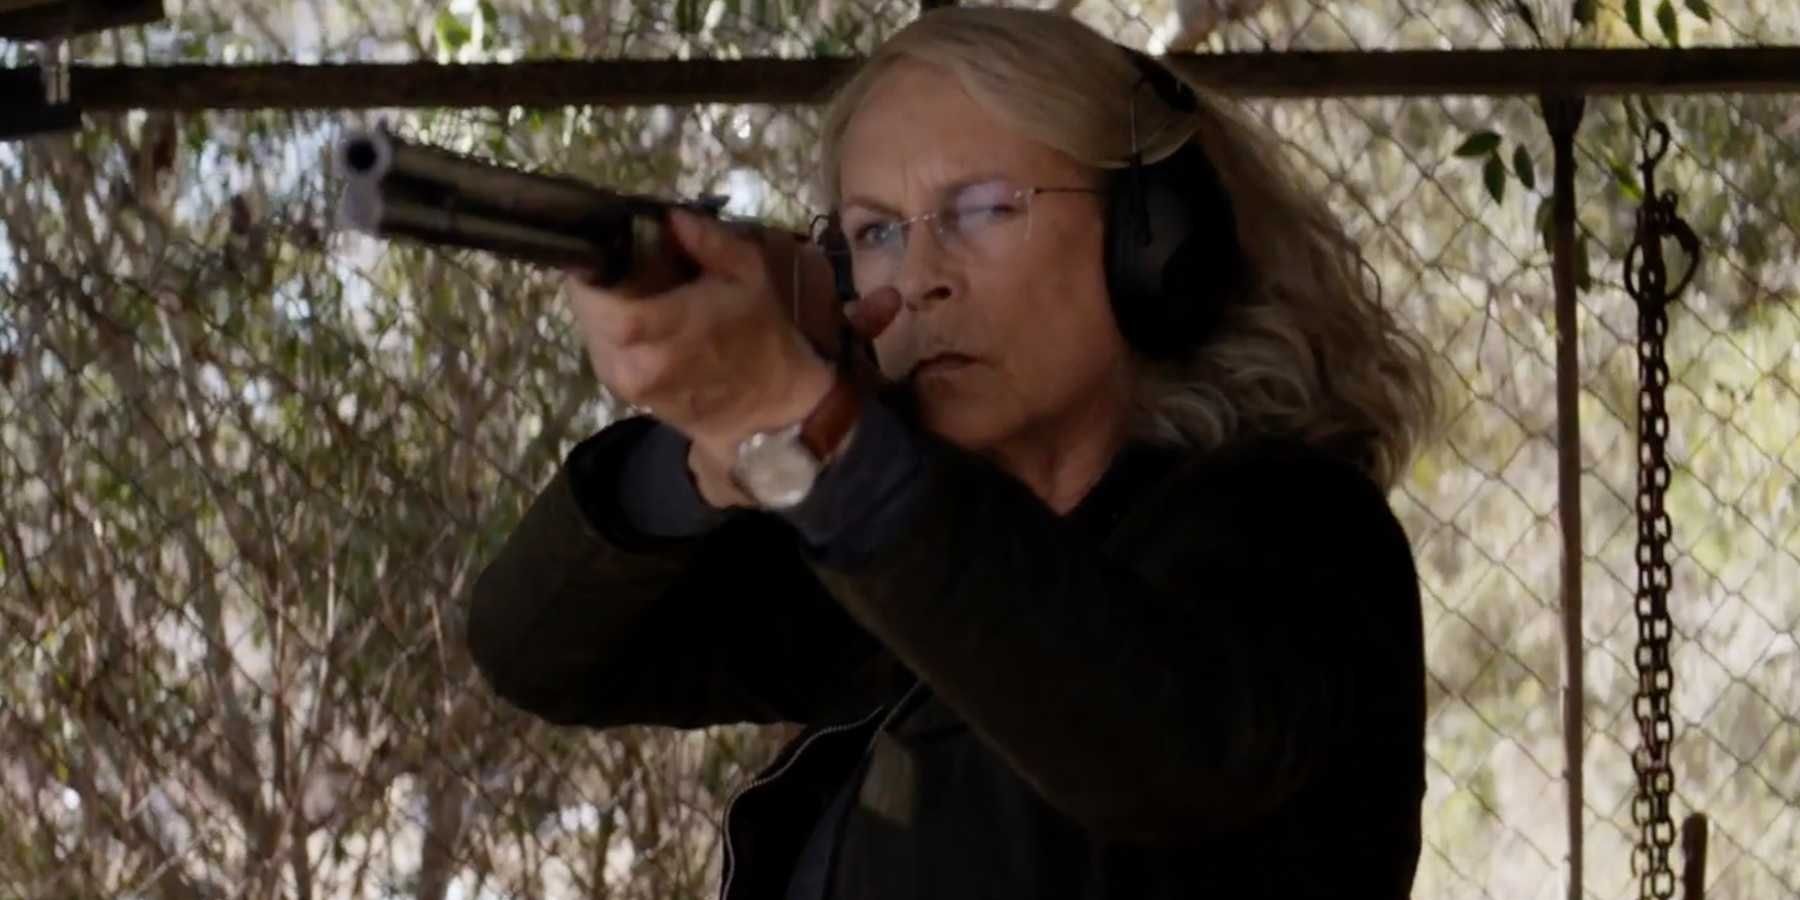 Jamie Lee Curtis as Laurie Strode shooting a shotgun in Halloween